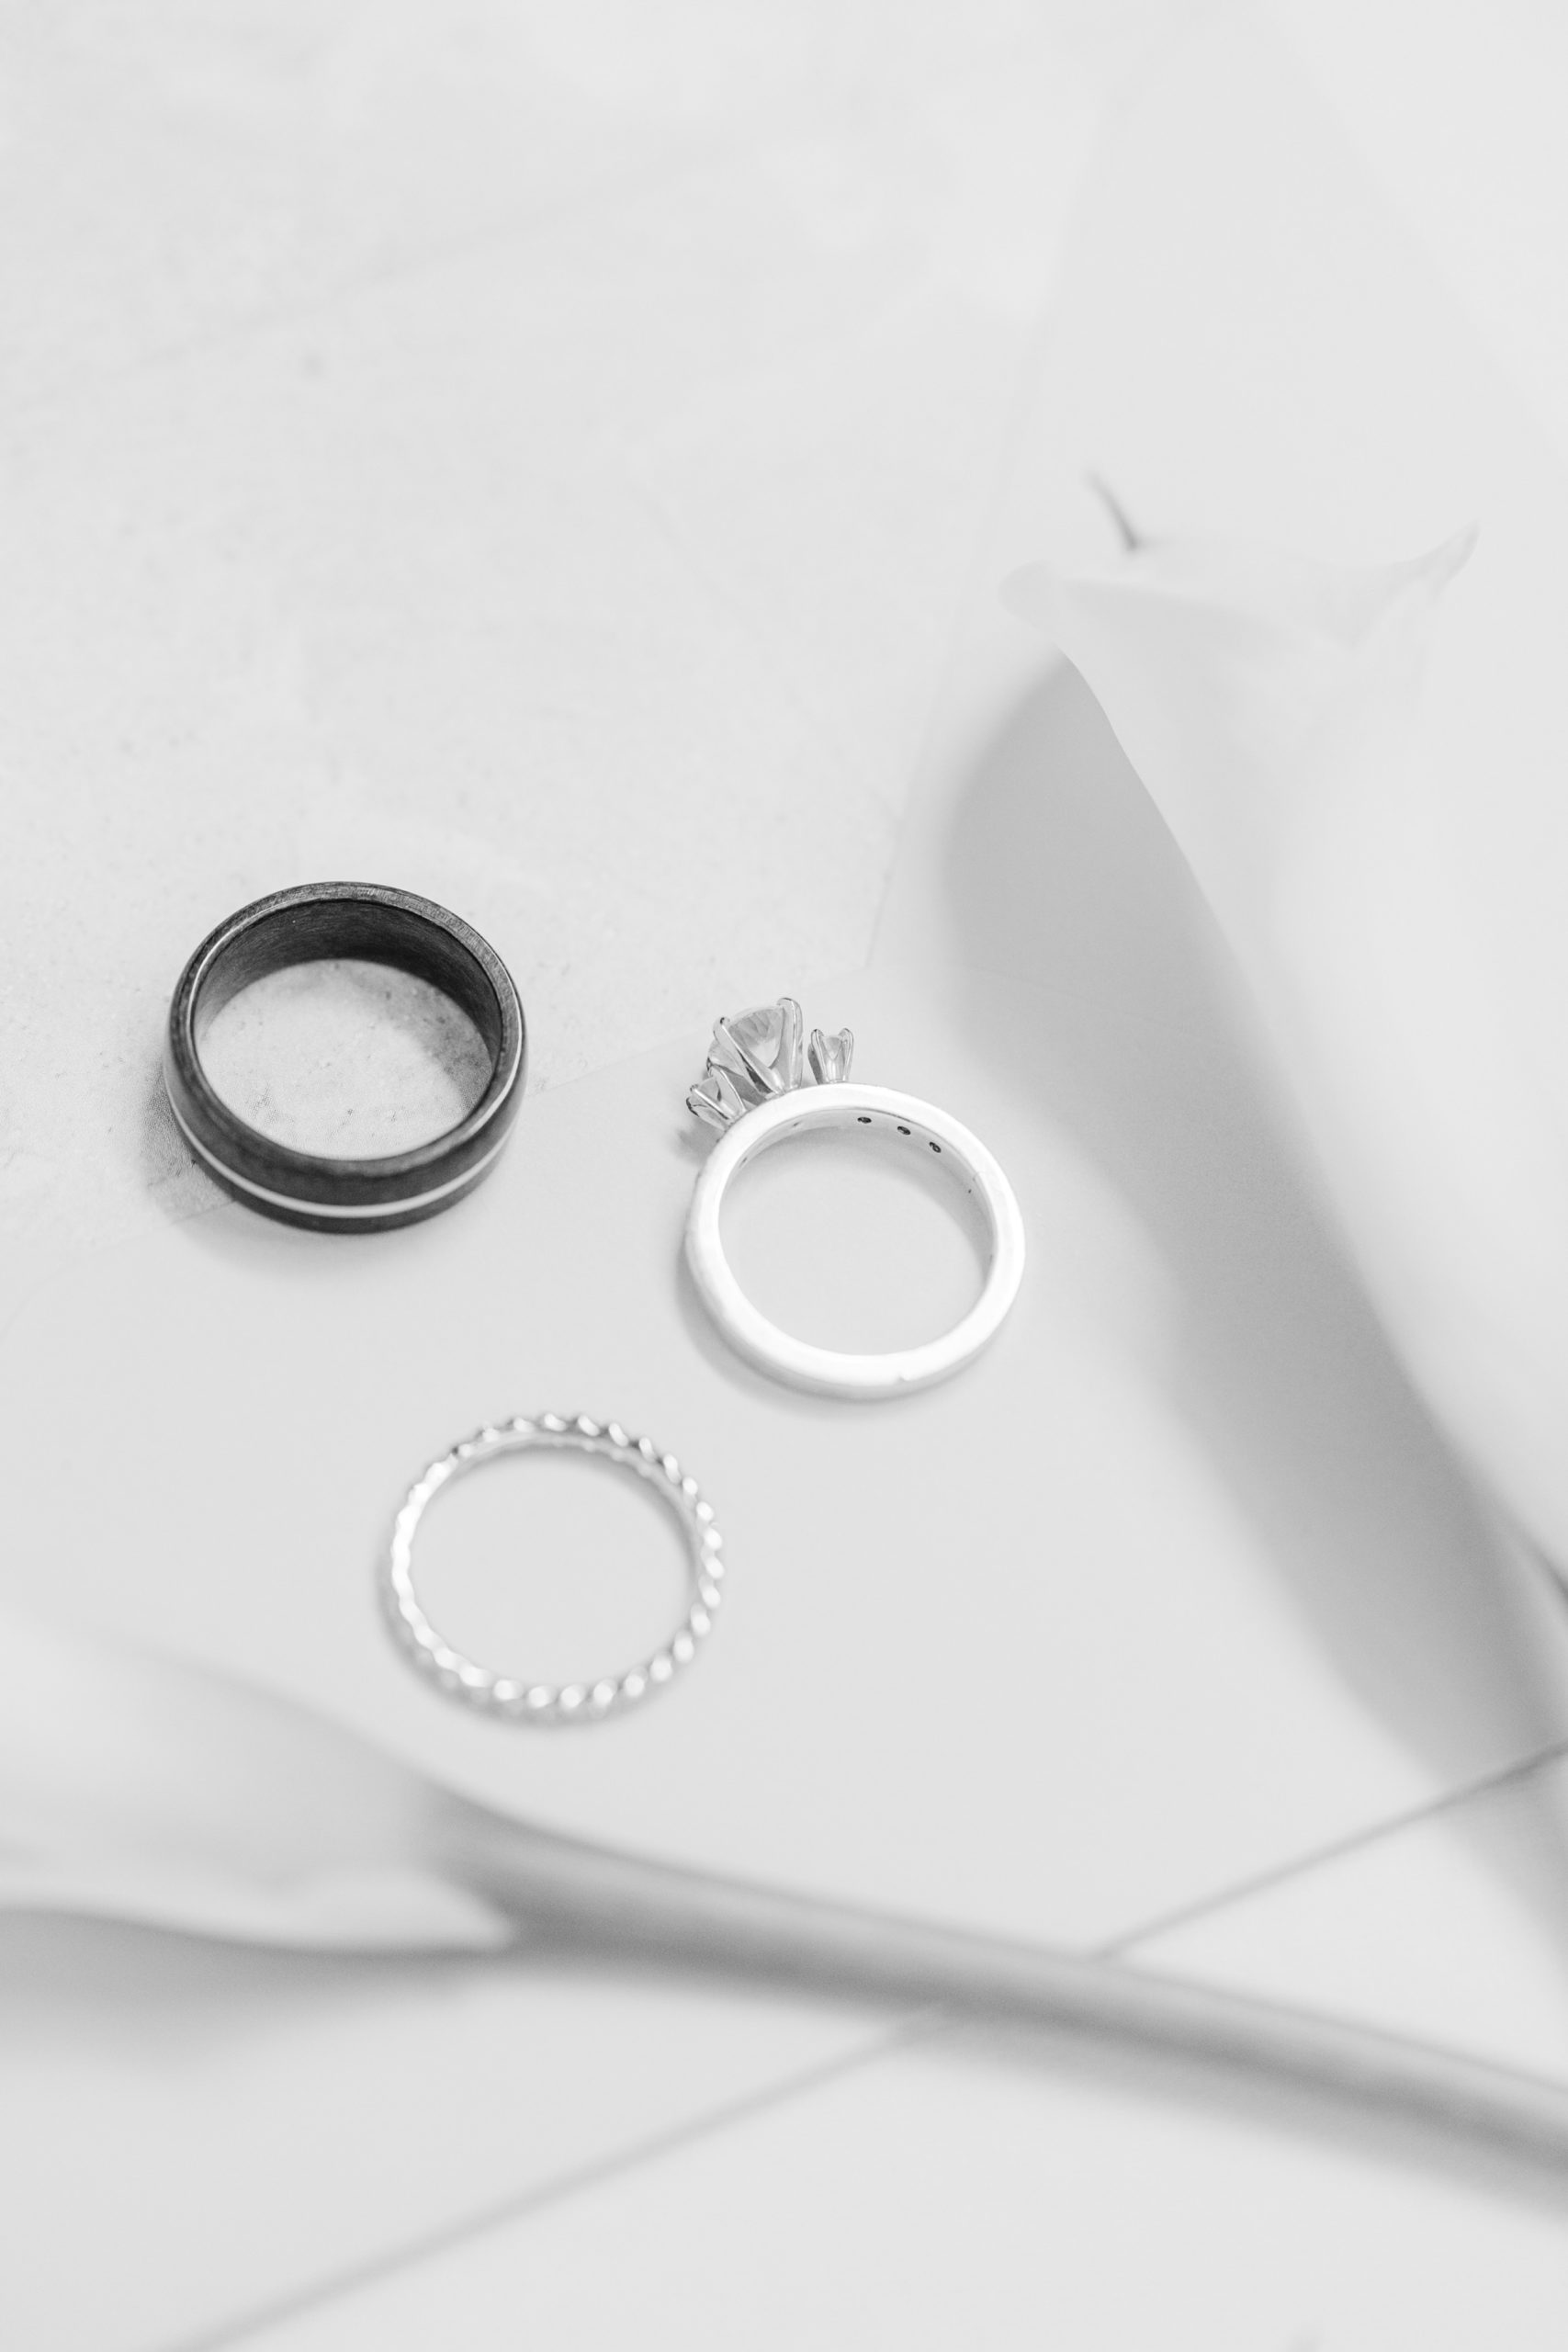 Faribault Wedding Ring Details